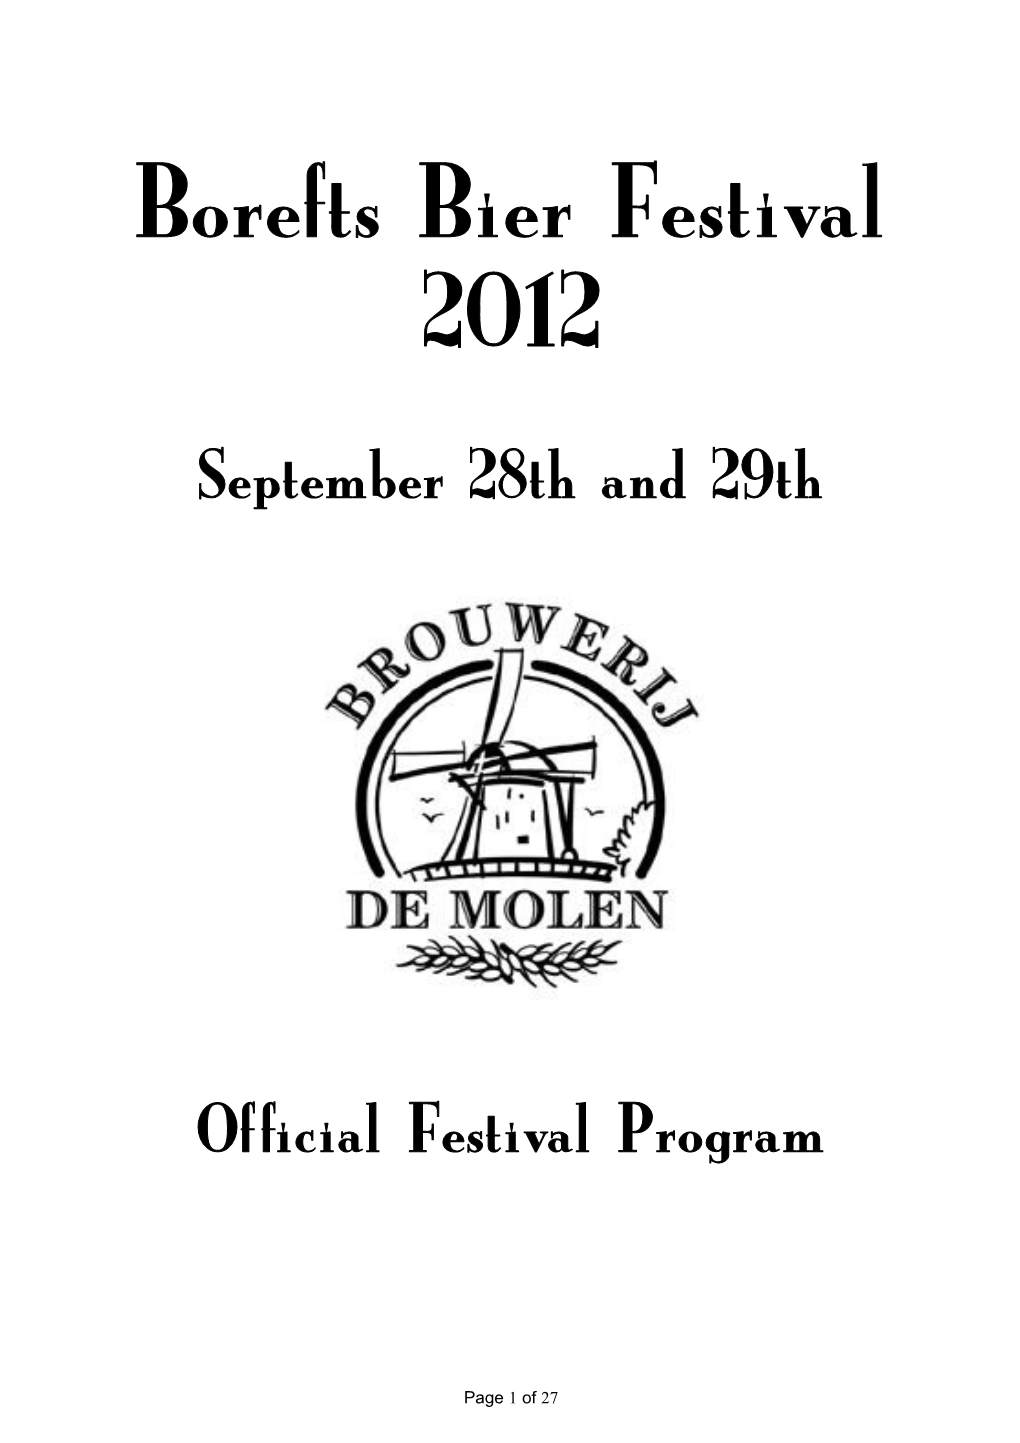 Borefts Bier Festival 2012